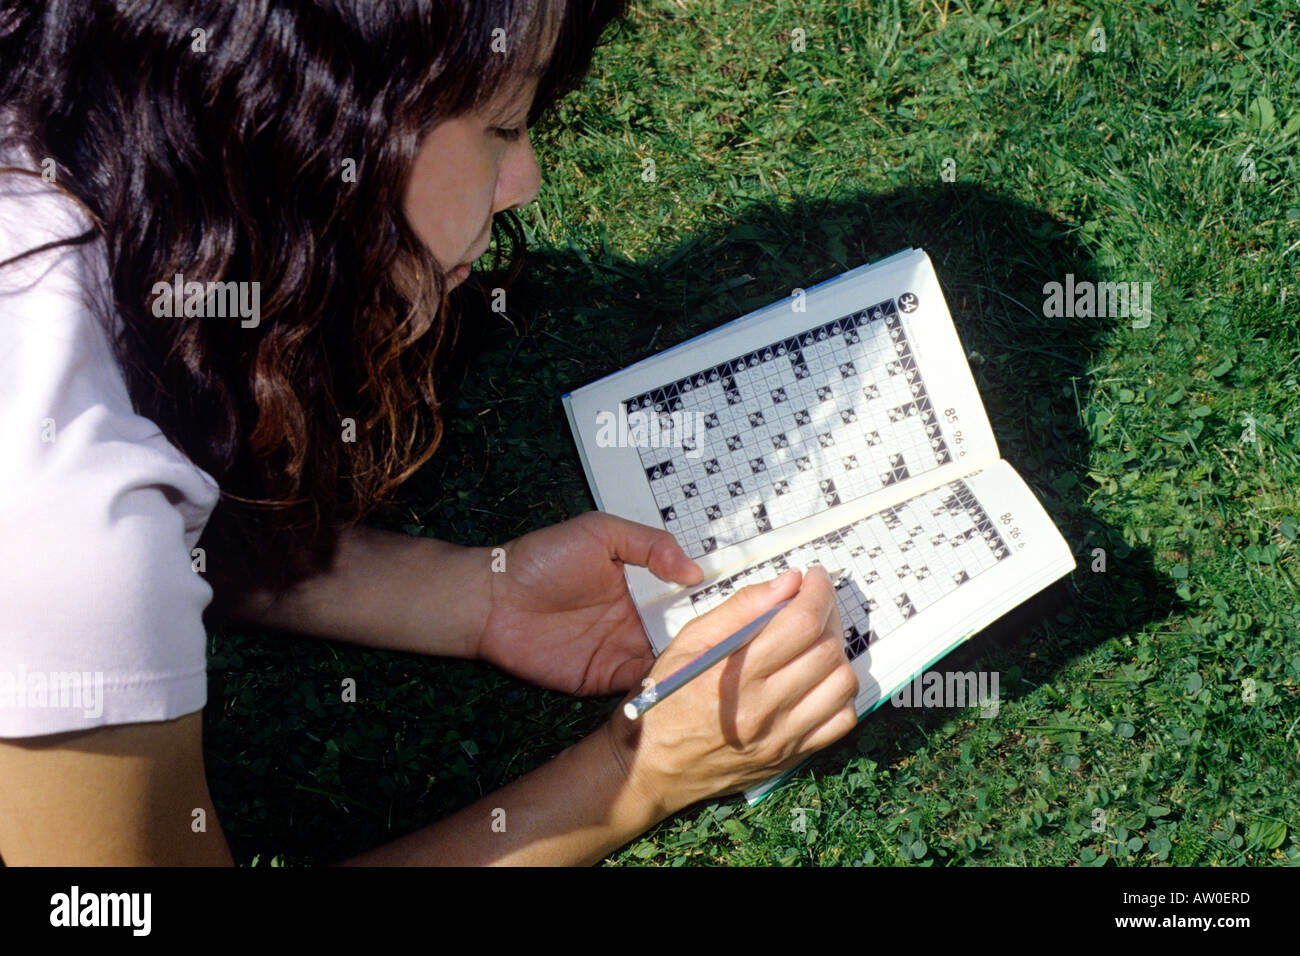 japanese woman lying in grass solving kakuro crossword Stock Photo